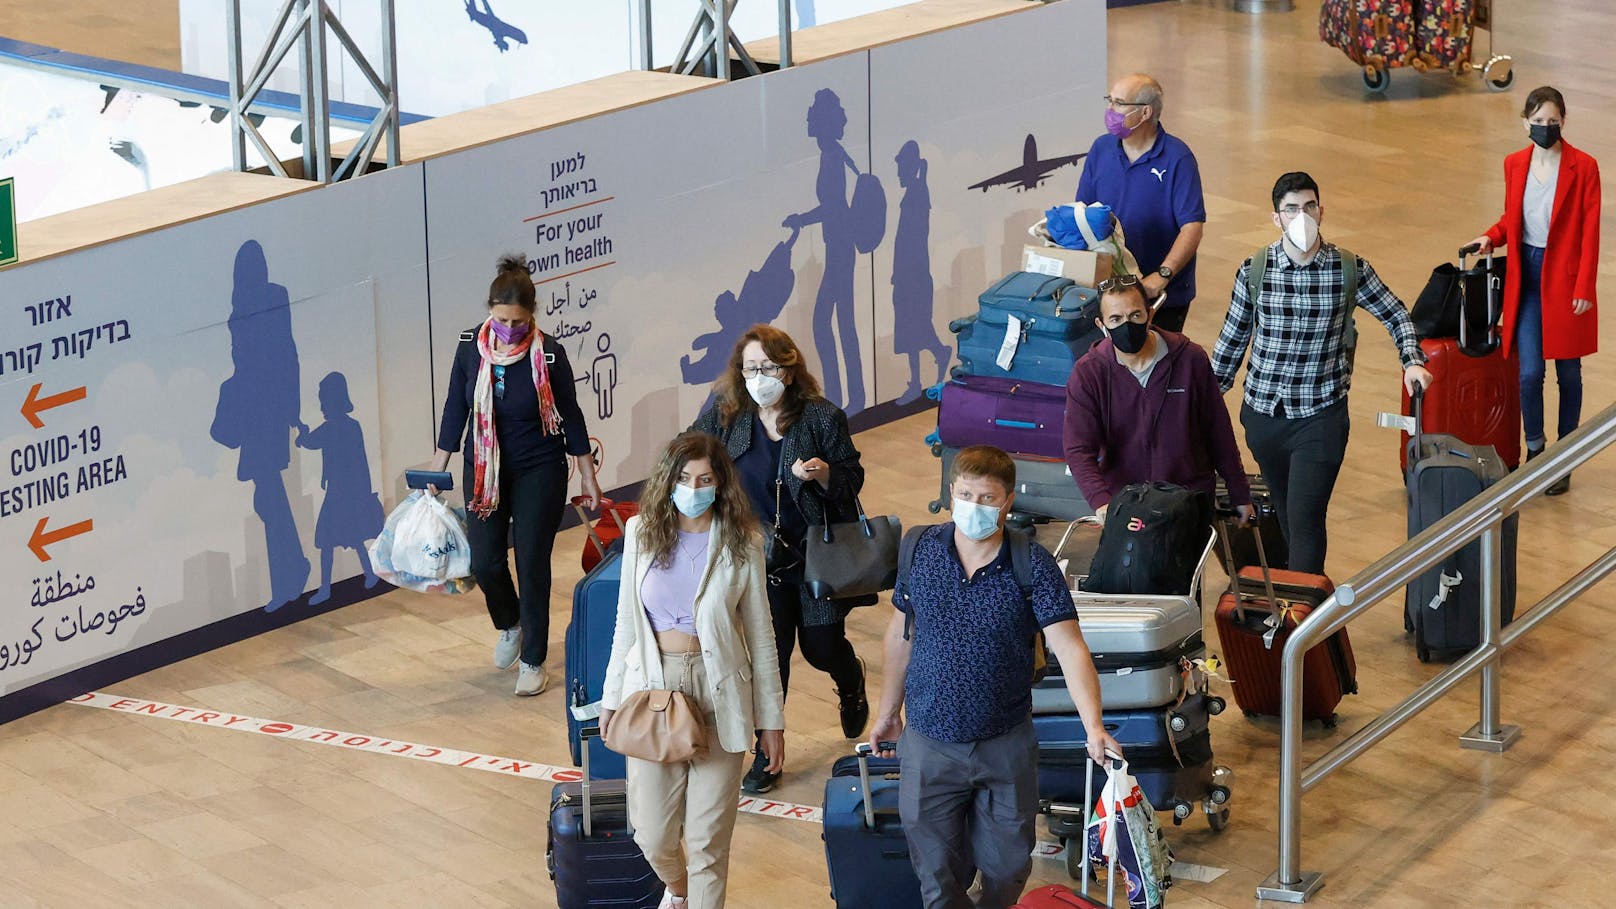 Im Kampf gegen die erneut steigenden Corona-Zahlen verschärft auch Israel seine Einreise-Regeln. (Im Bild: Flughafen "Ben Gurion" in Israel)